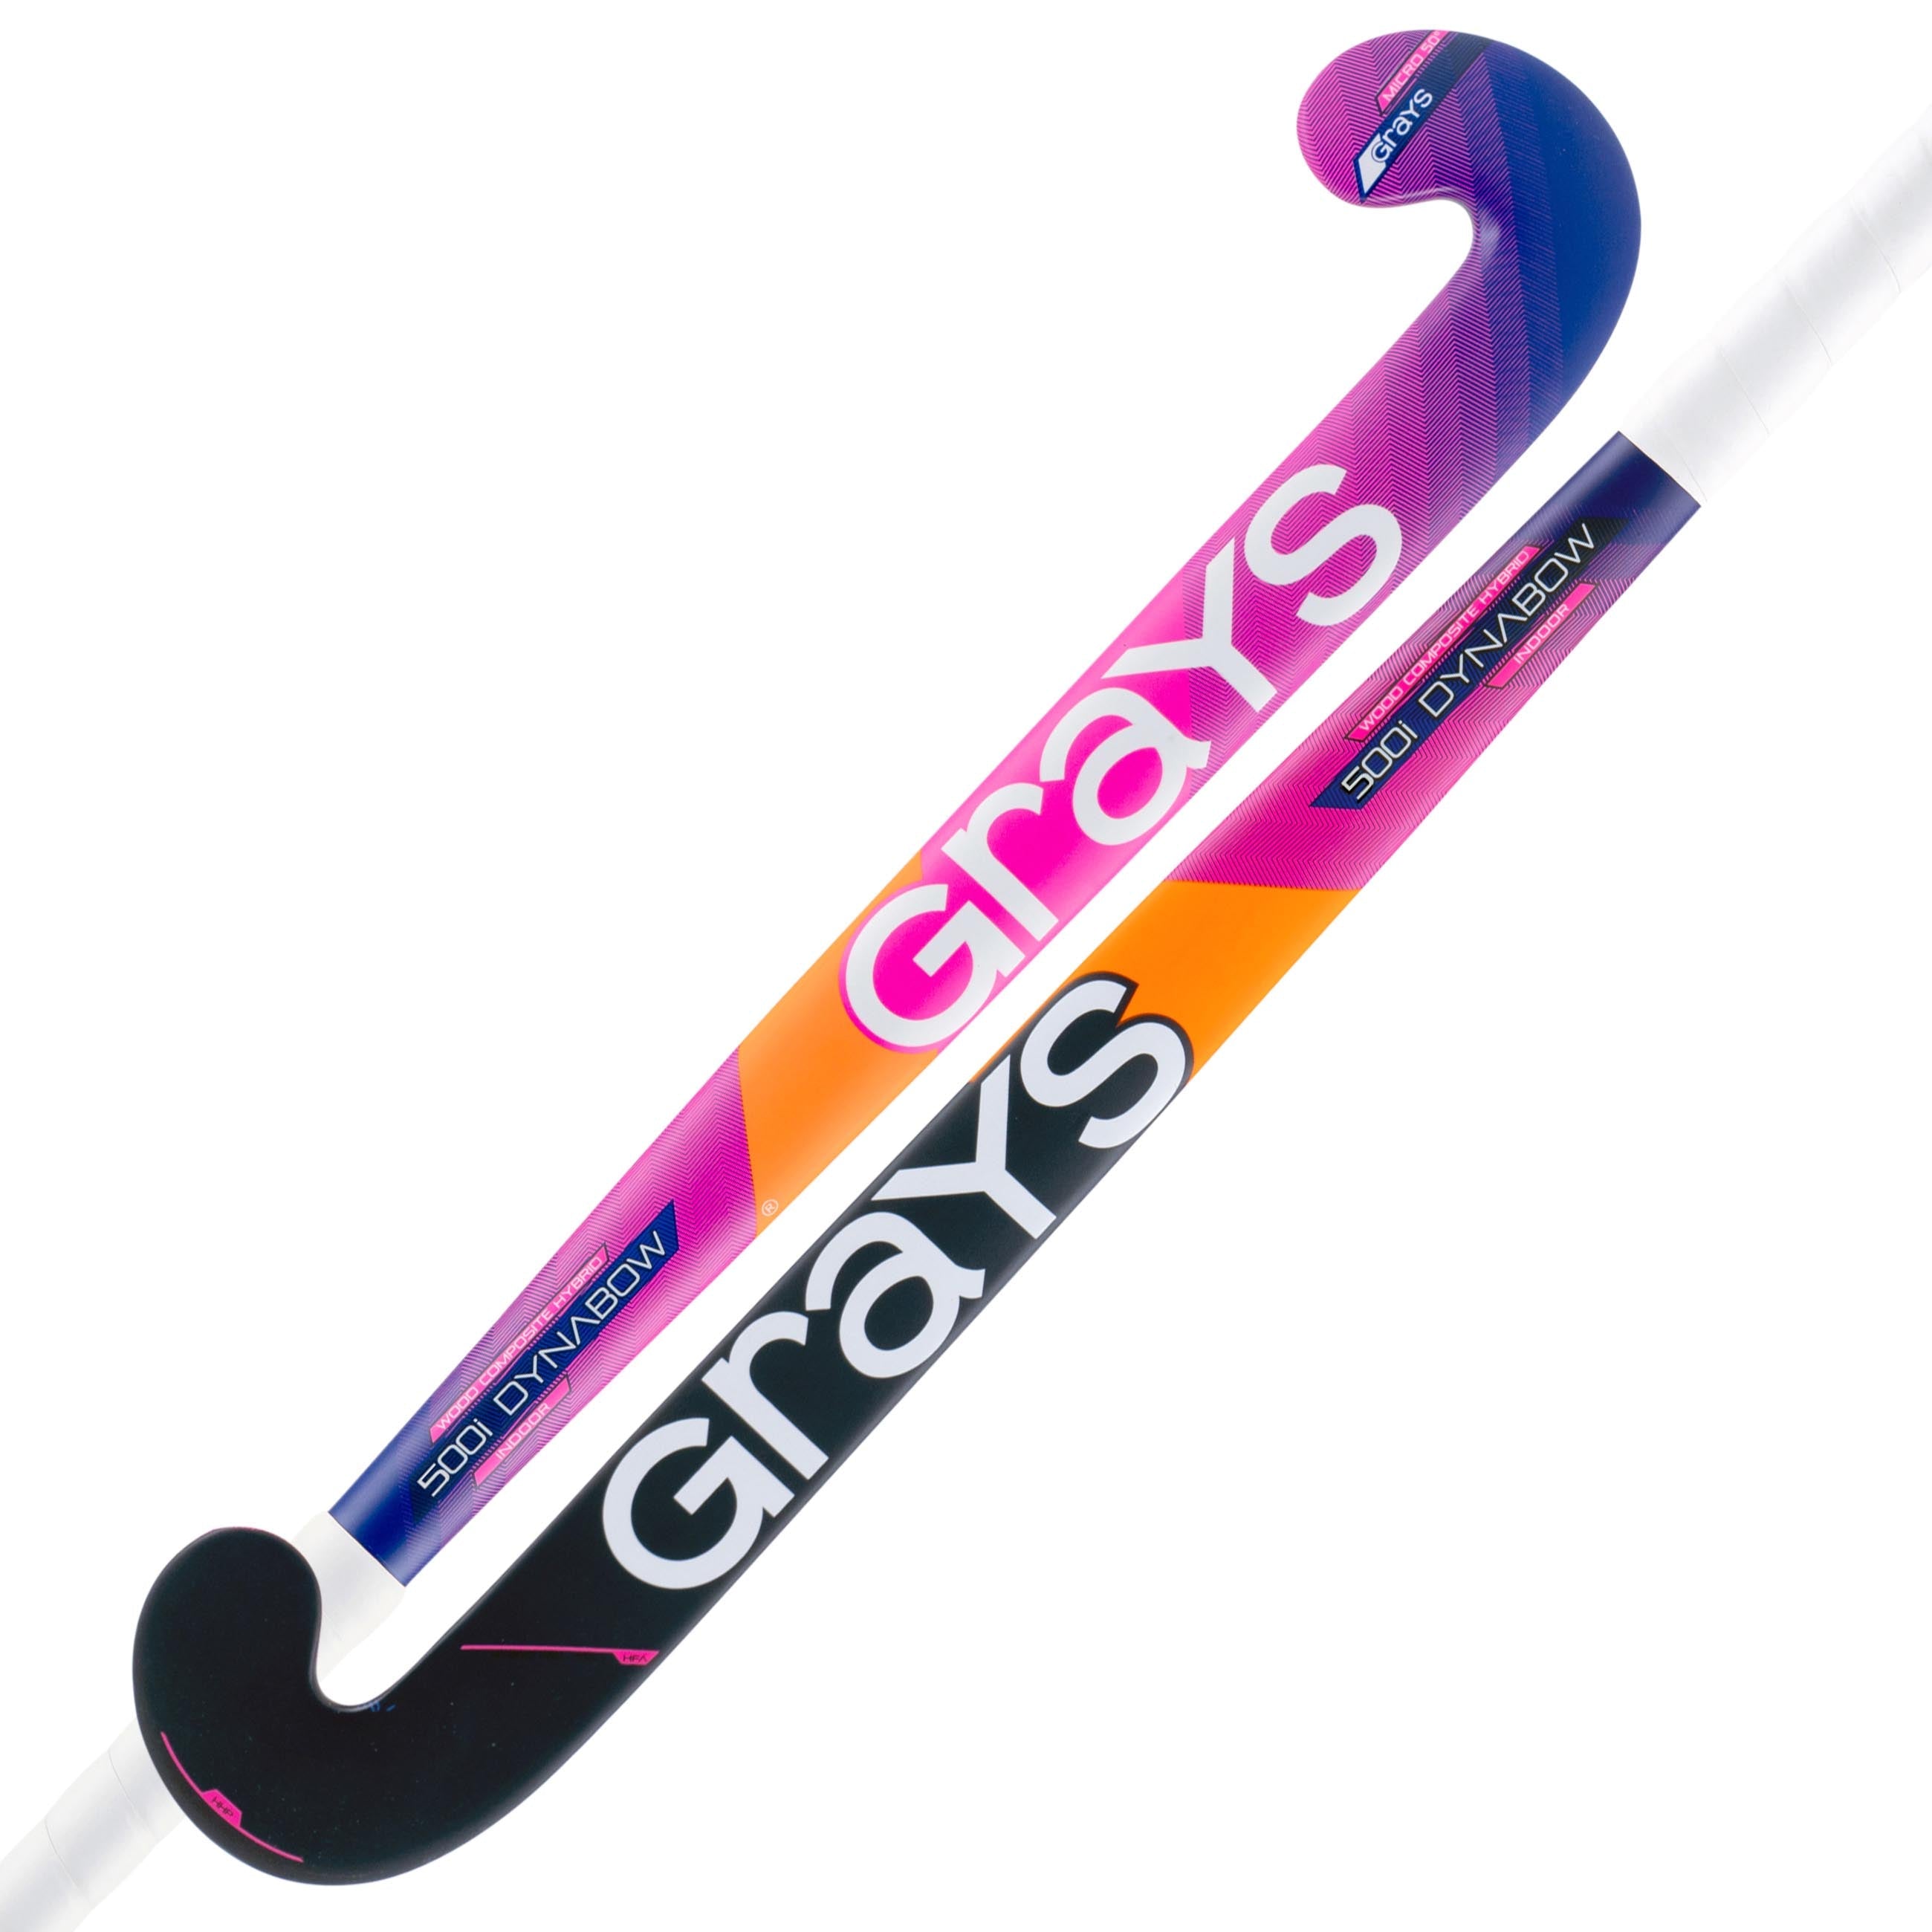 500i Dynabow indoor hockeystick